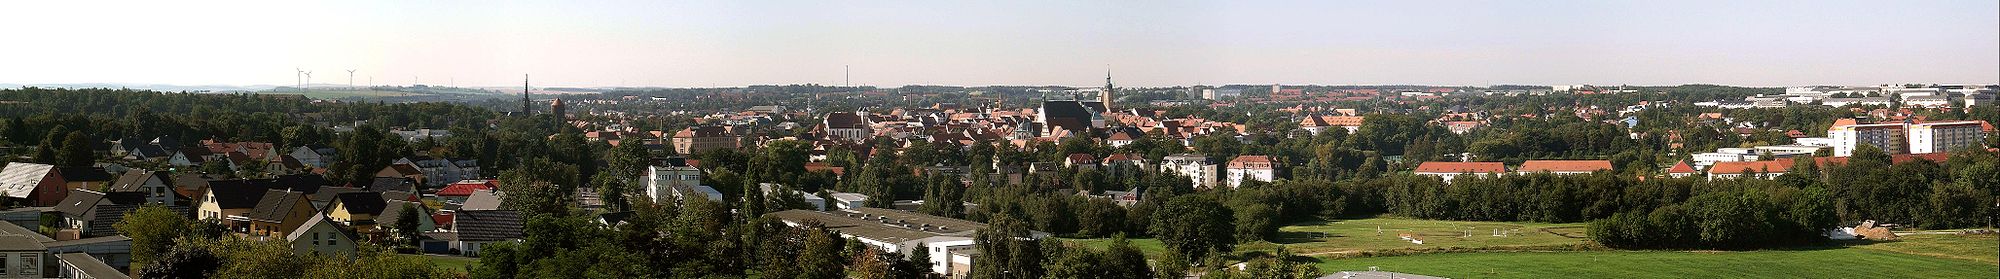 Panoramabild von Freiberg mit Blickrichtung von Südwest bis Nord